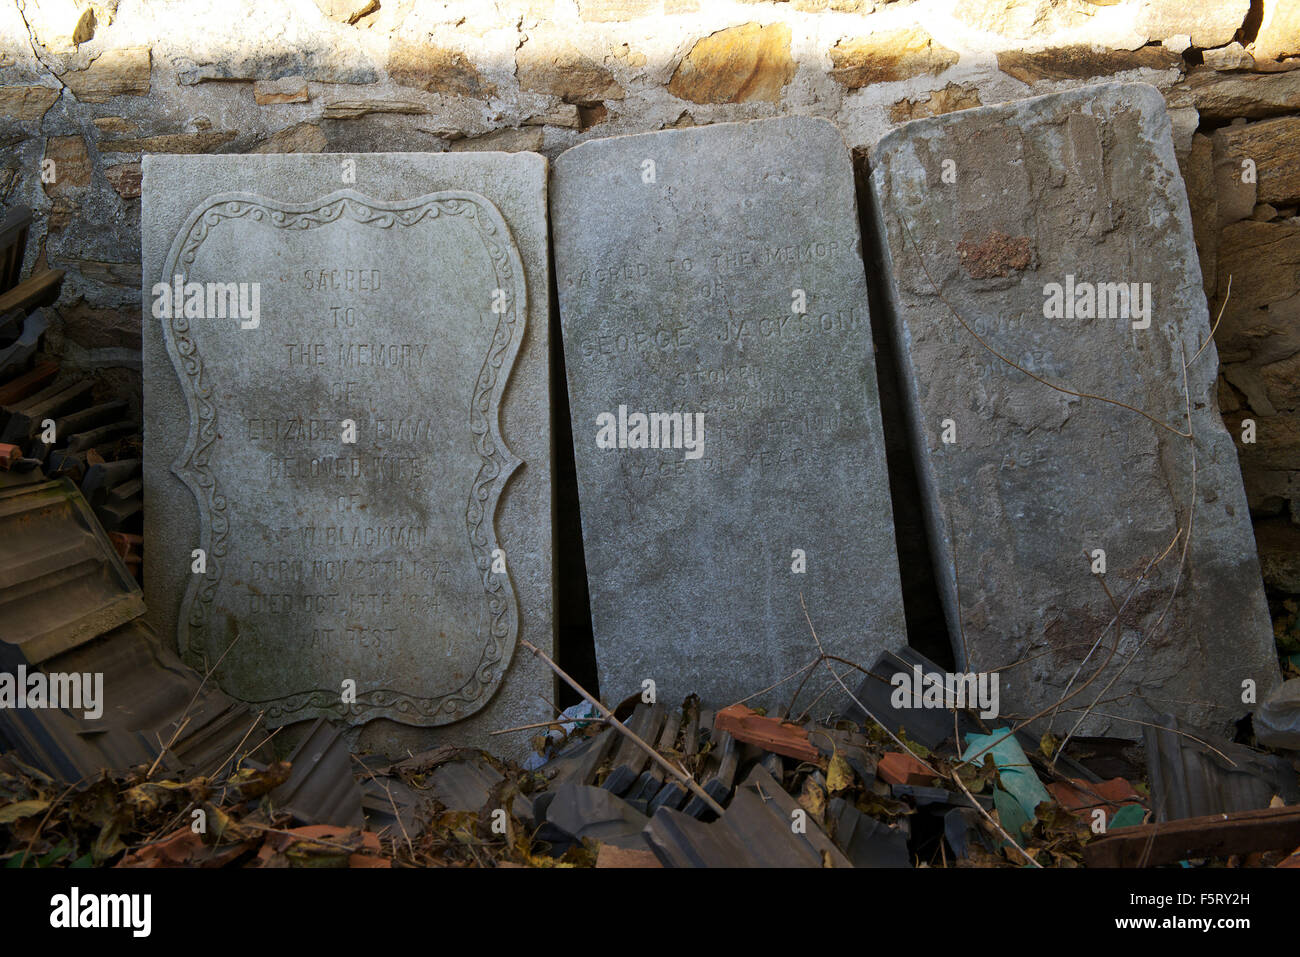 Grabsteine der britischen Marine Matrosen in einer Ecke des Geländes der ehemaligen britischen Marine Barracks in Liugong Insel gefunden. Stockfoto